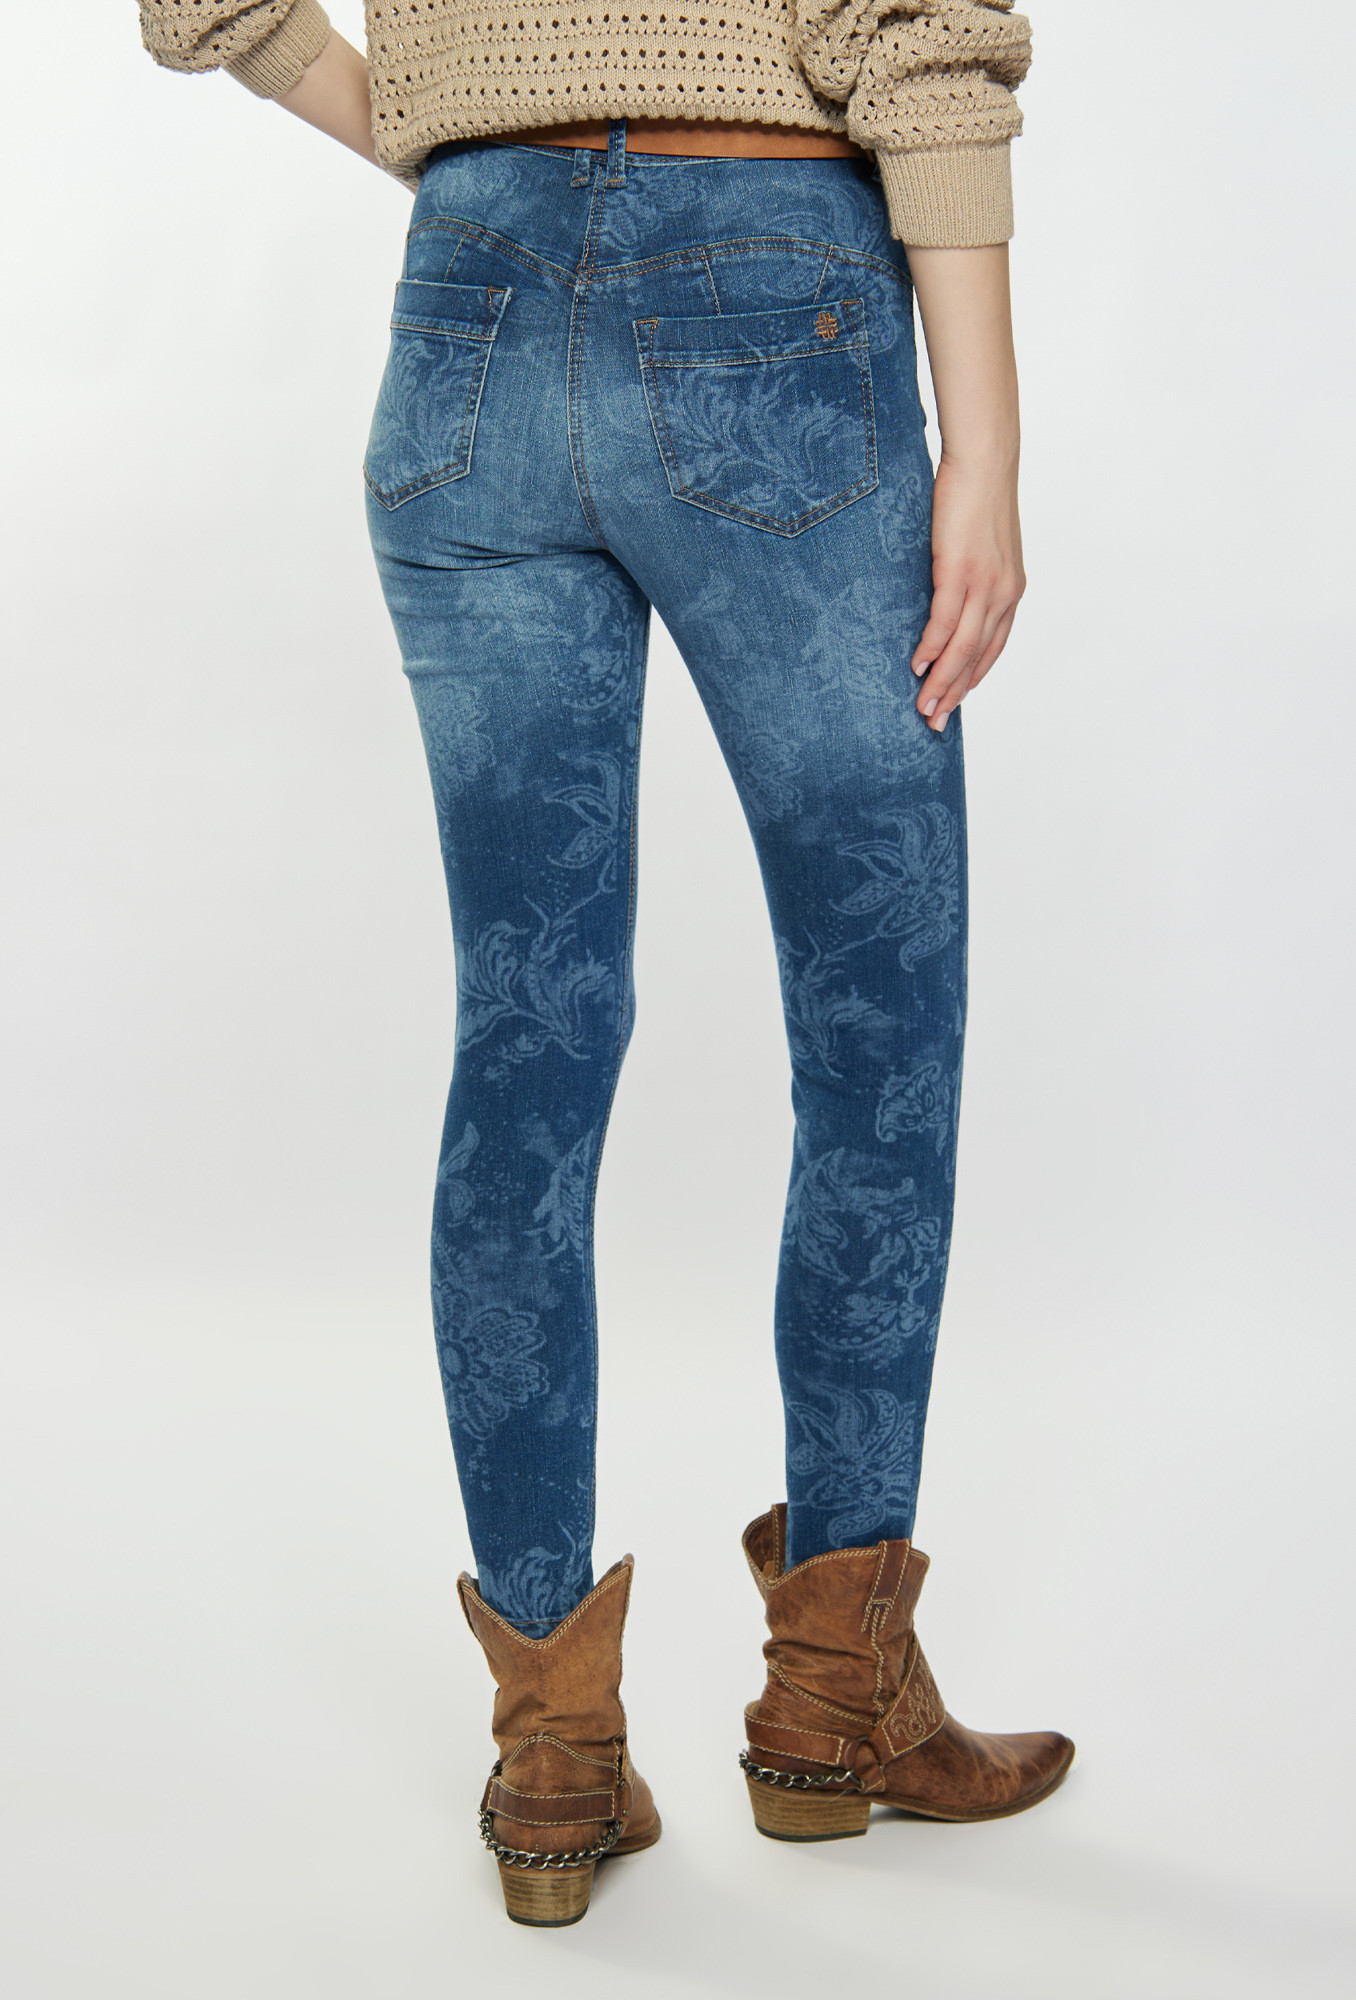 Monnari Jeans Vzorované džíny modré 46